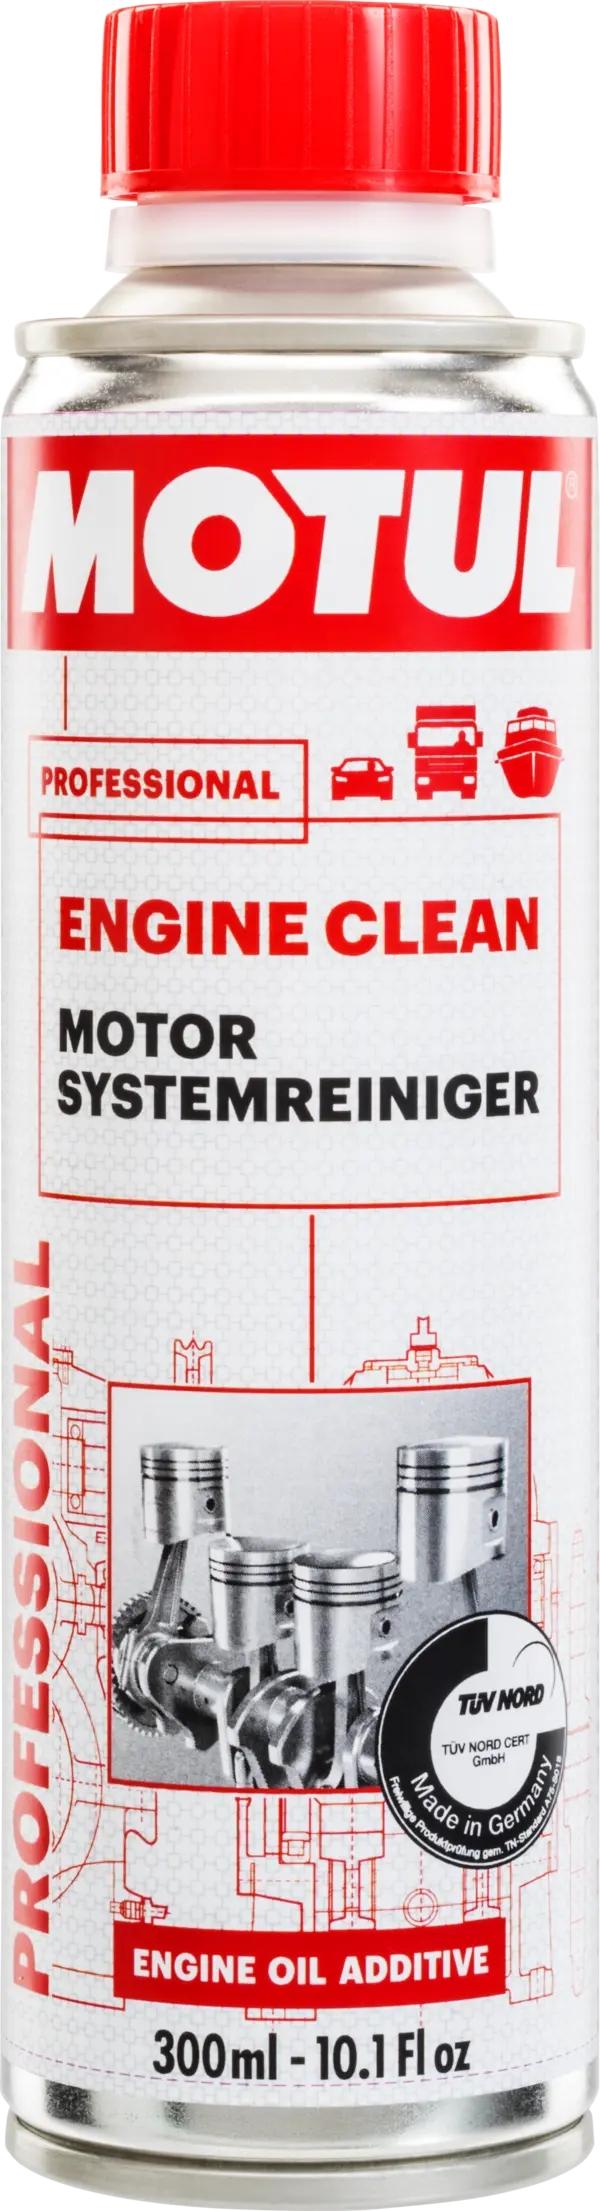 MOTUL Engine Clean